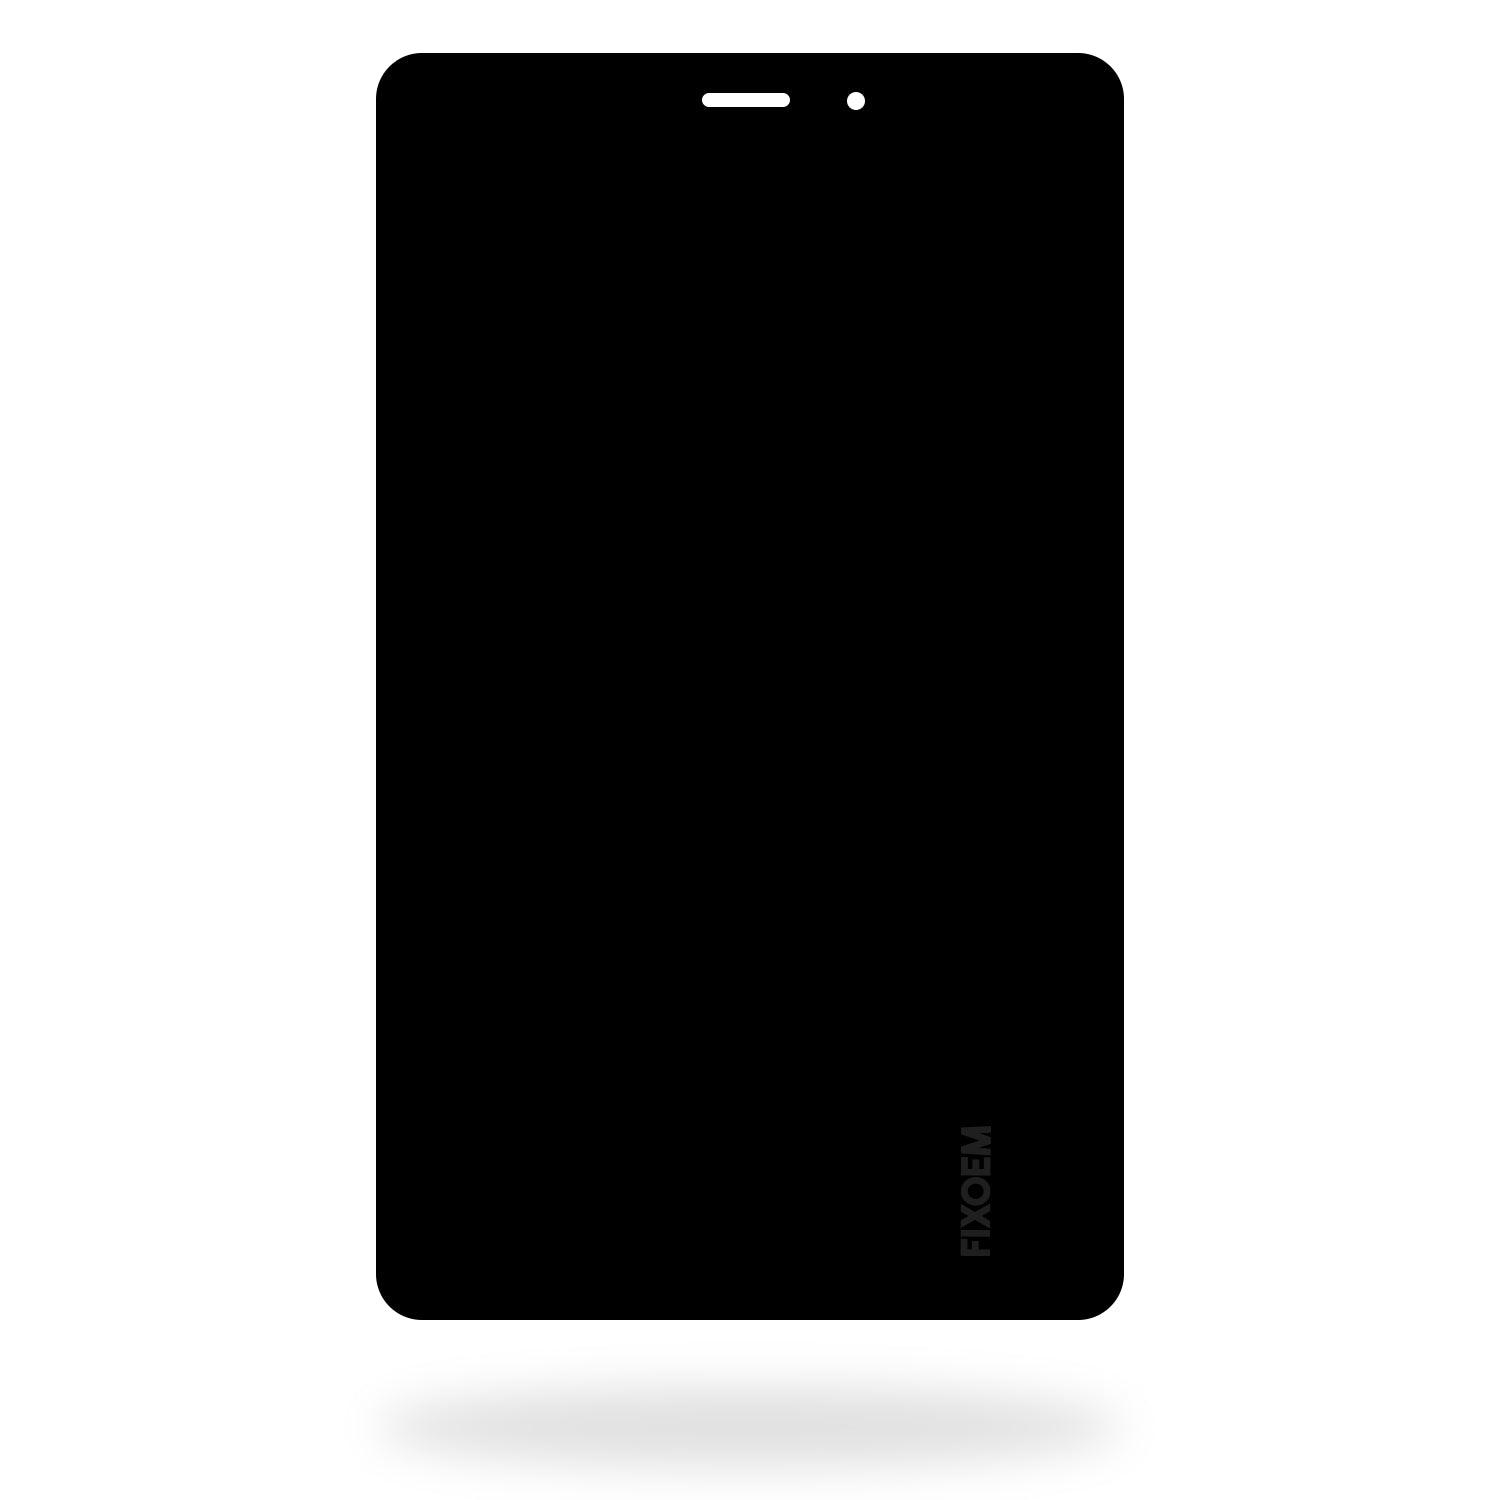 Display Samsung Tab A 8.0 2019 T295 Version Lte a solo $ 250.00 Refaccion y puestos celulares, refurbish y microelectronica.- FixOEM